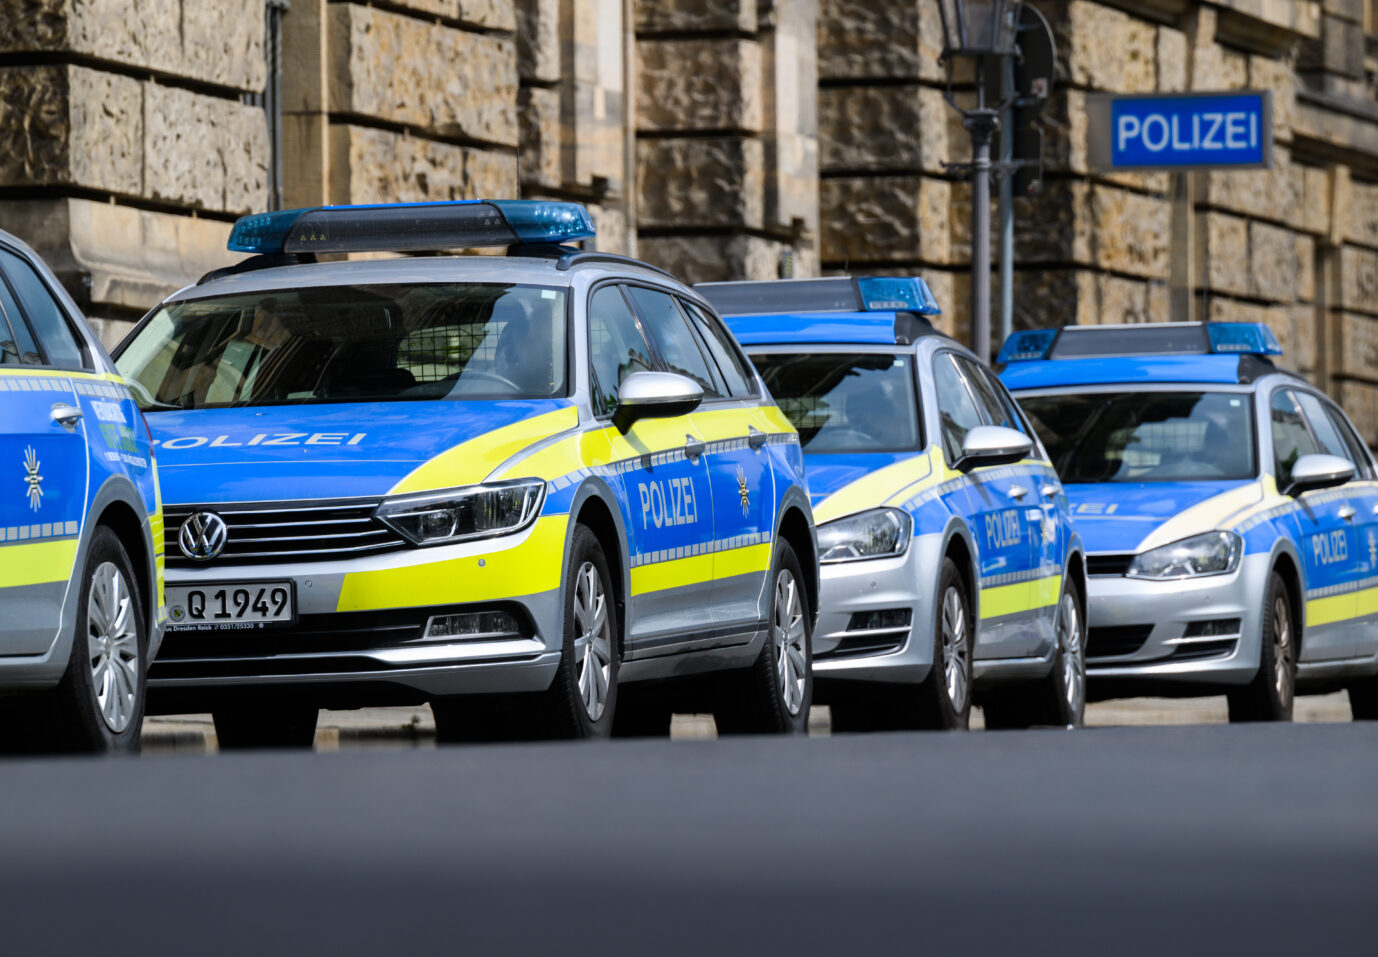 Polizeiautos parken in Dresden vor dem Polizeipräsidium: Passende Lade-Säulen für E-Streifenwagen fehlen jedoch Foto: picture alliance/dpa | Robert Michael